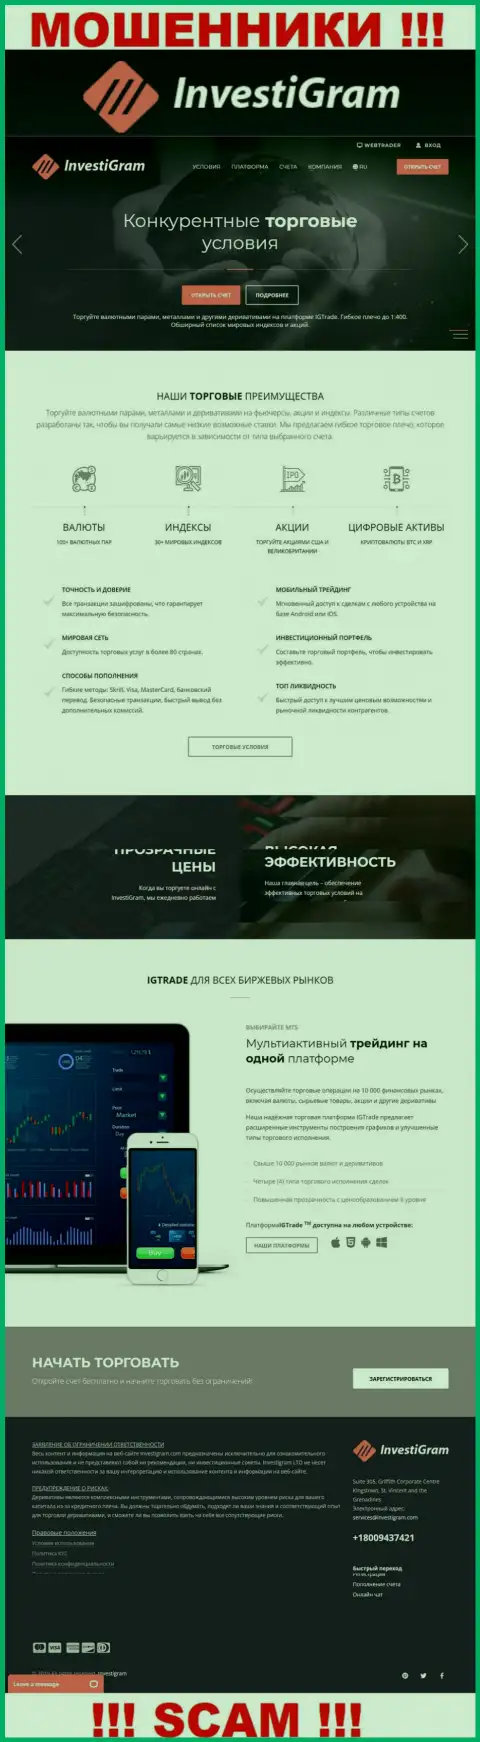 Приманка для лохов - официальный информационный сервис мошенников ИнвестиГрам Ком